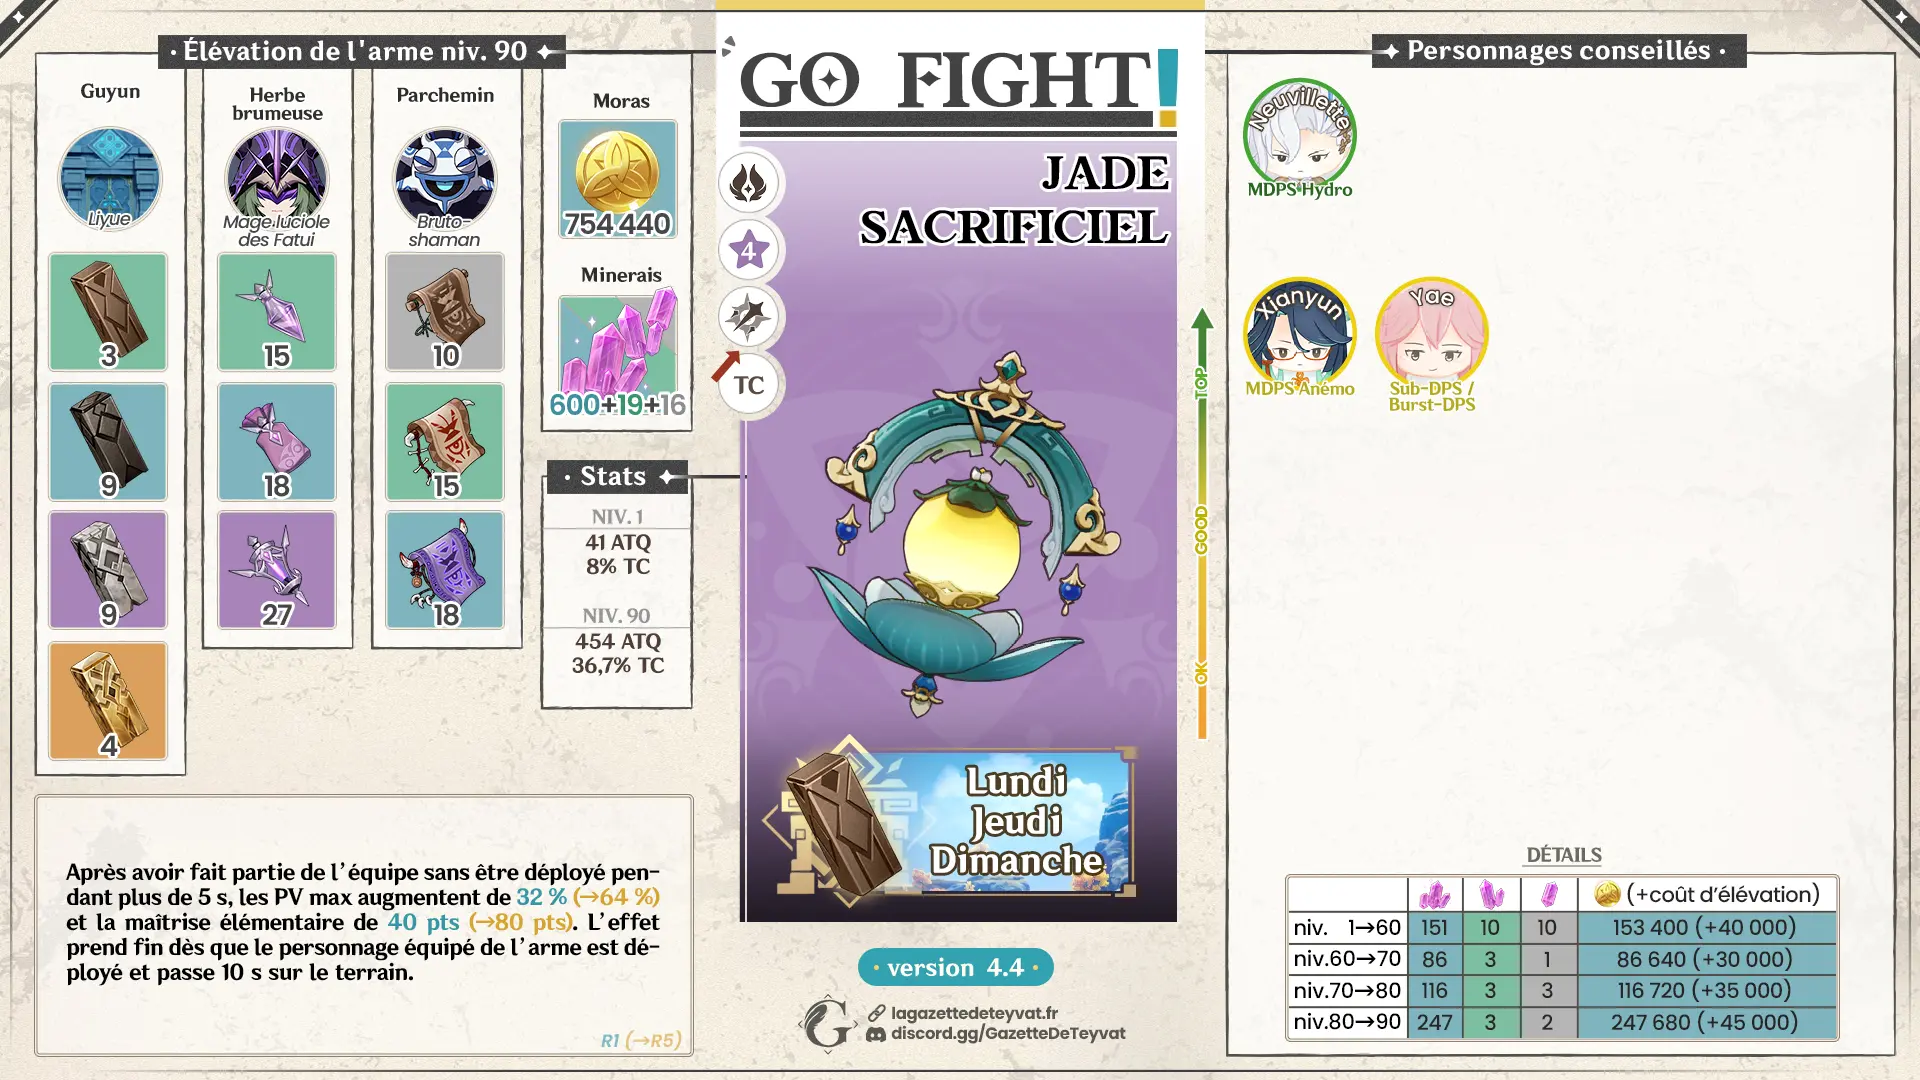 Jade sacrificiel Genshin Impact, guide complet, farm, personnages conseillés